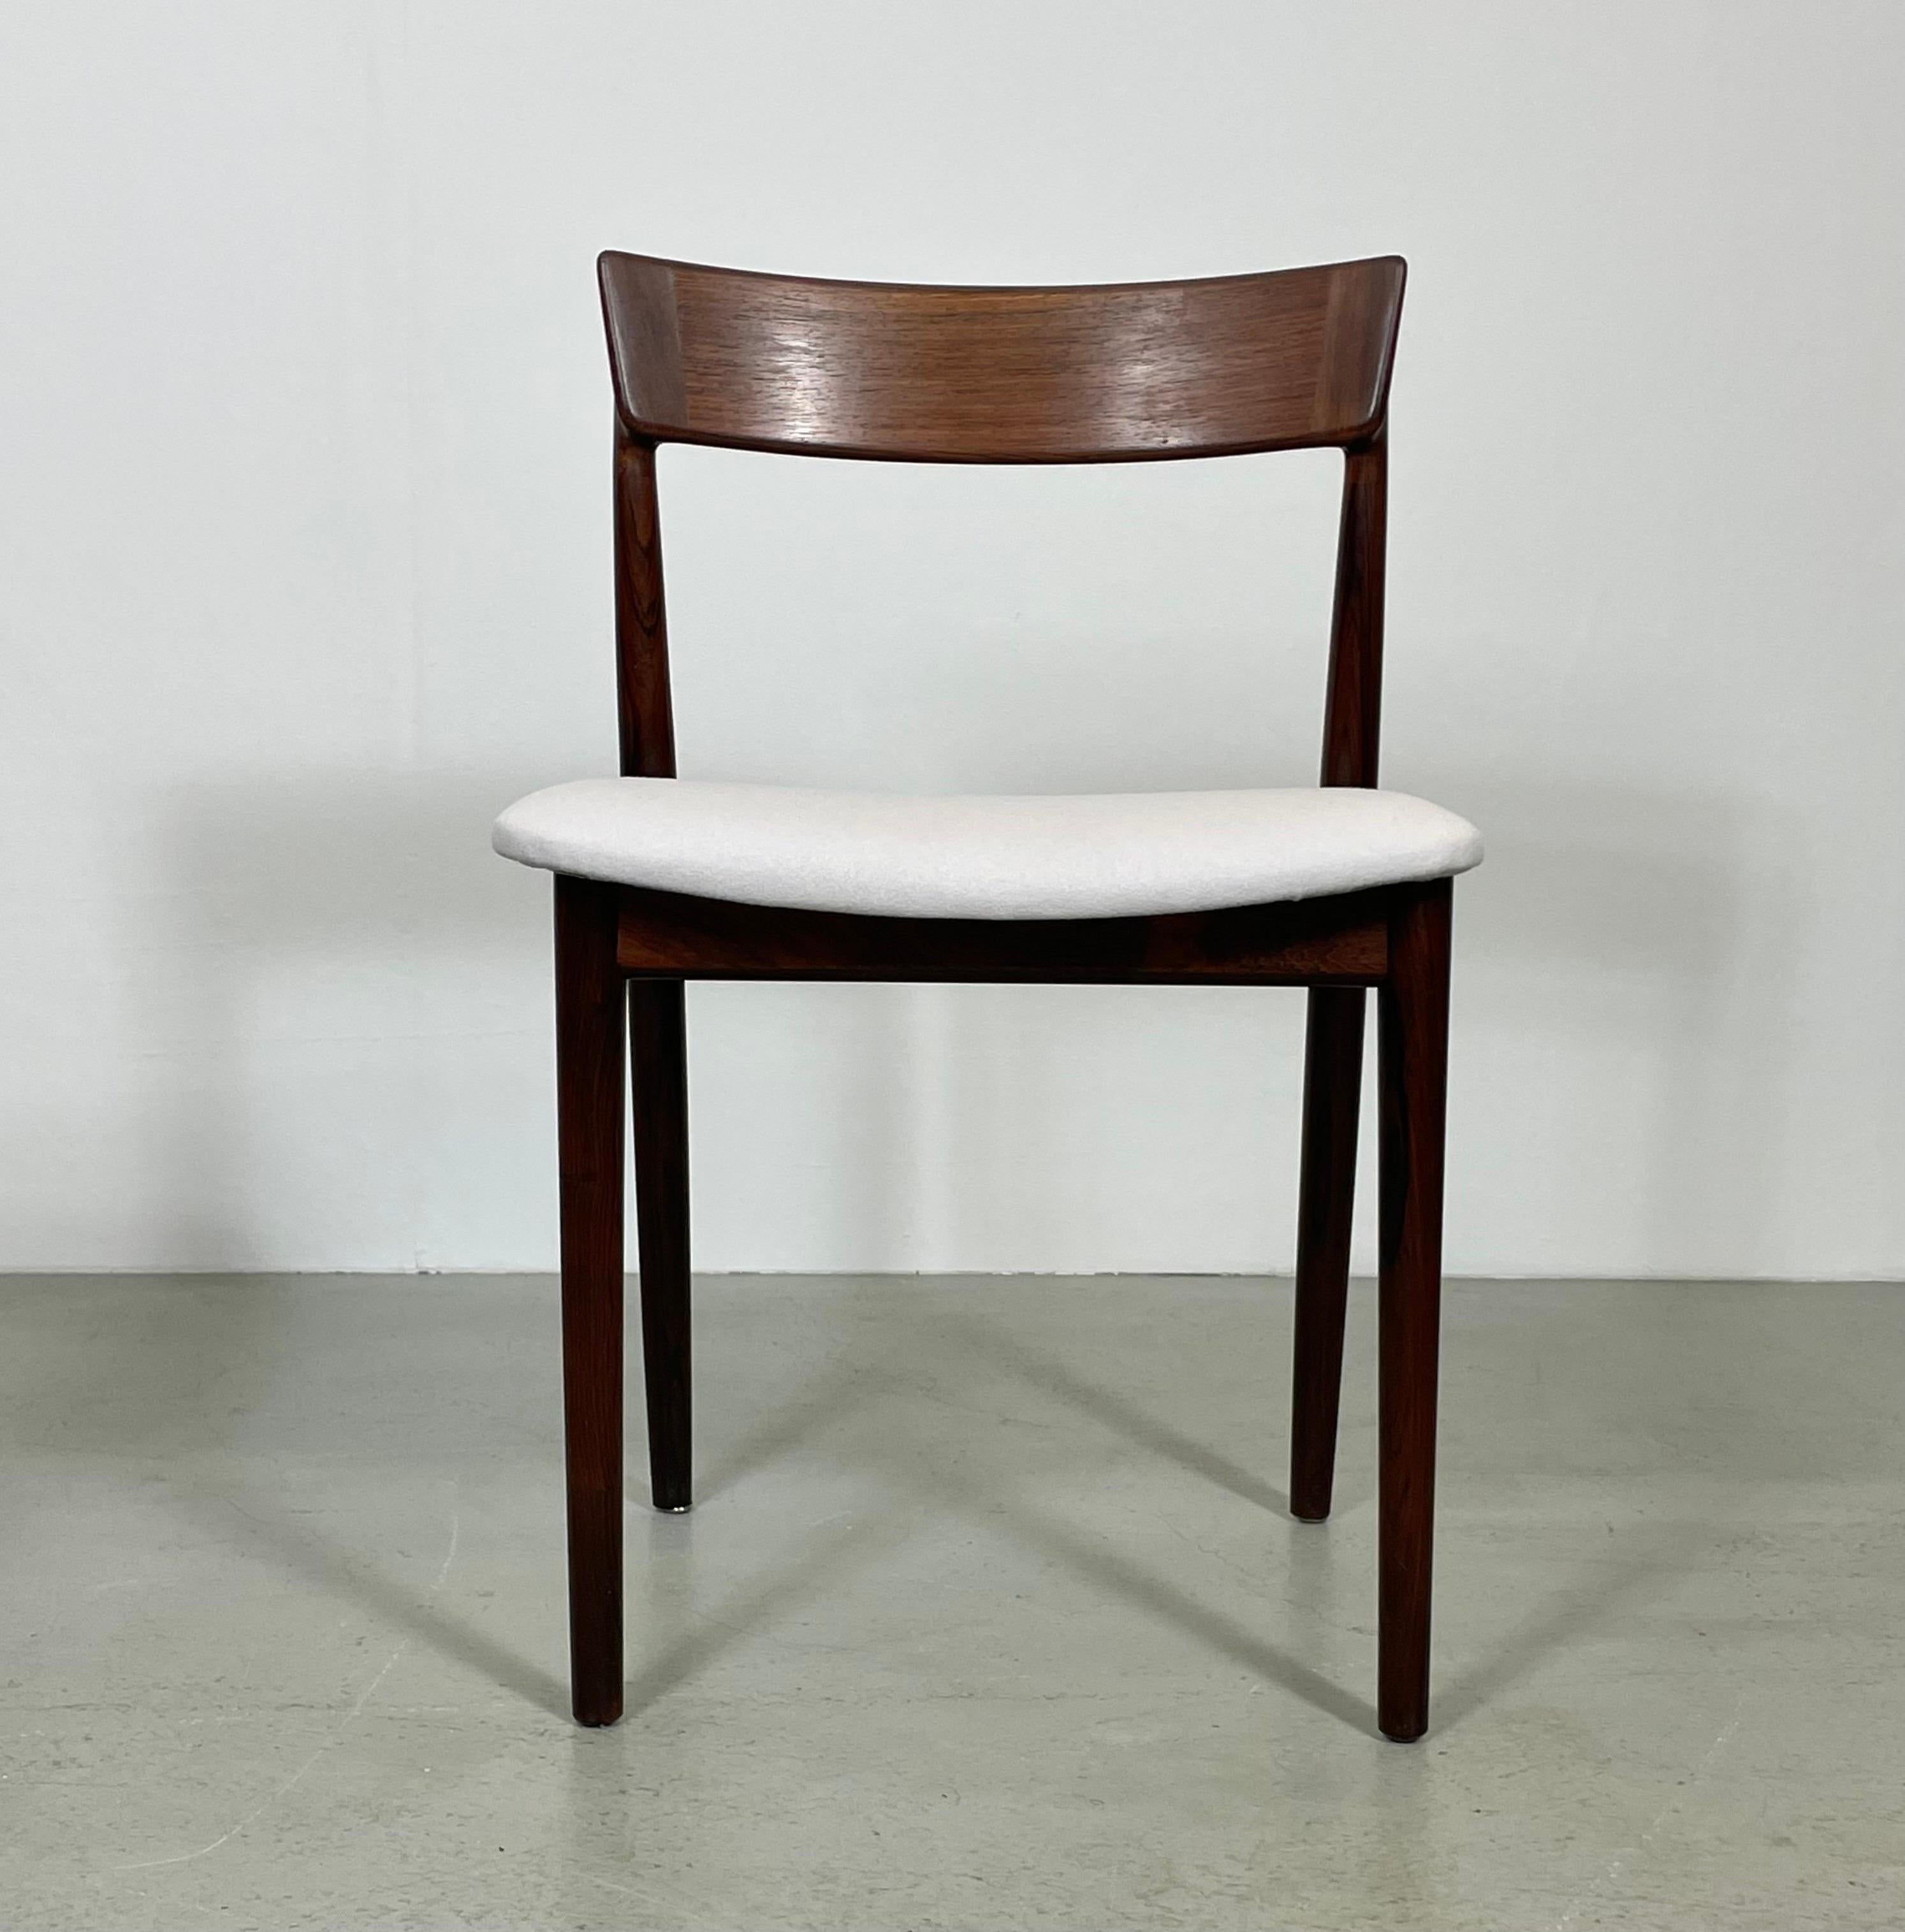 Ce rare ensemble de 4 chaises a été conçu par Henry Rosengren Hansen pour Brande Møbelindustri. Il a été produit au Danemark dans les années 1960. Les chaises de salle à manger sont en palissandre massif ; l'assise a été restaurée et présente un